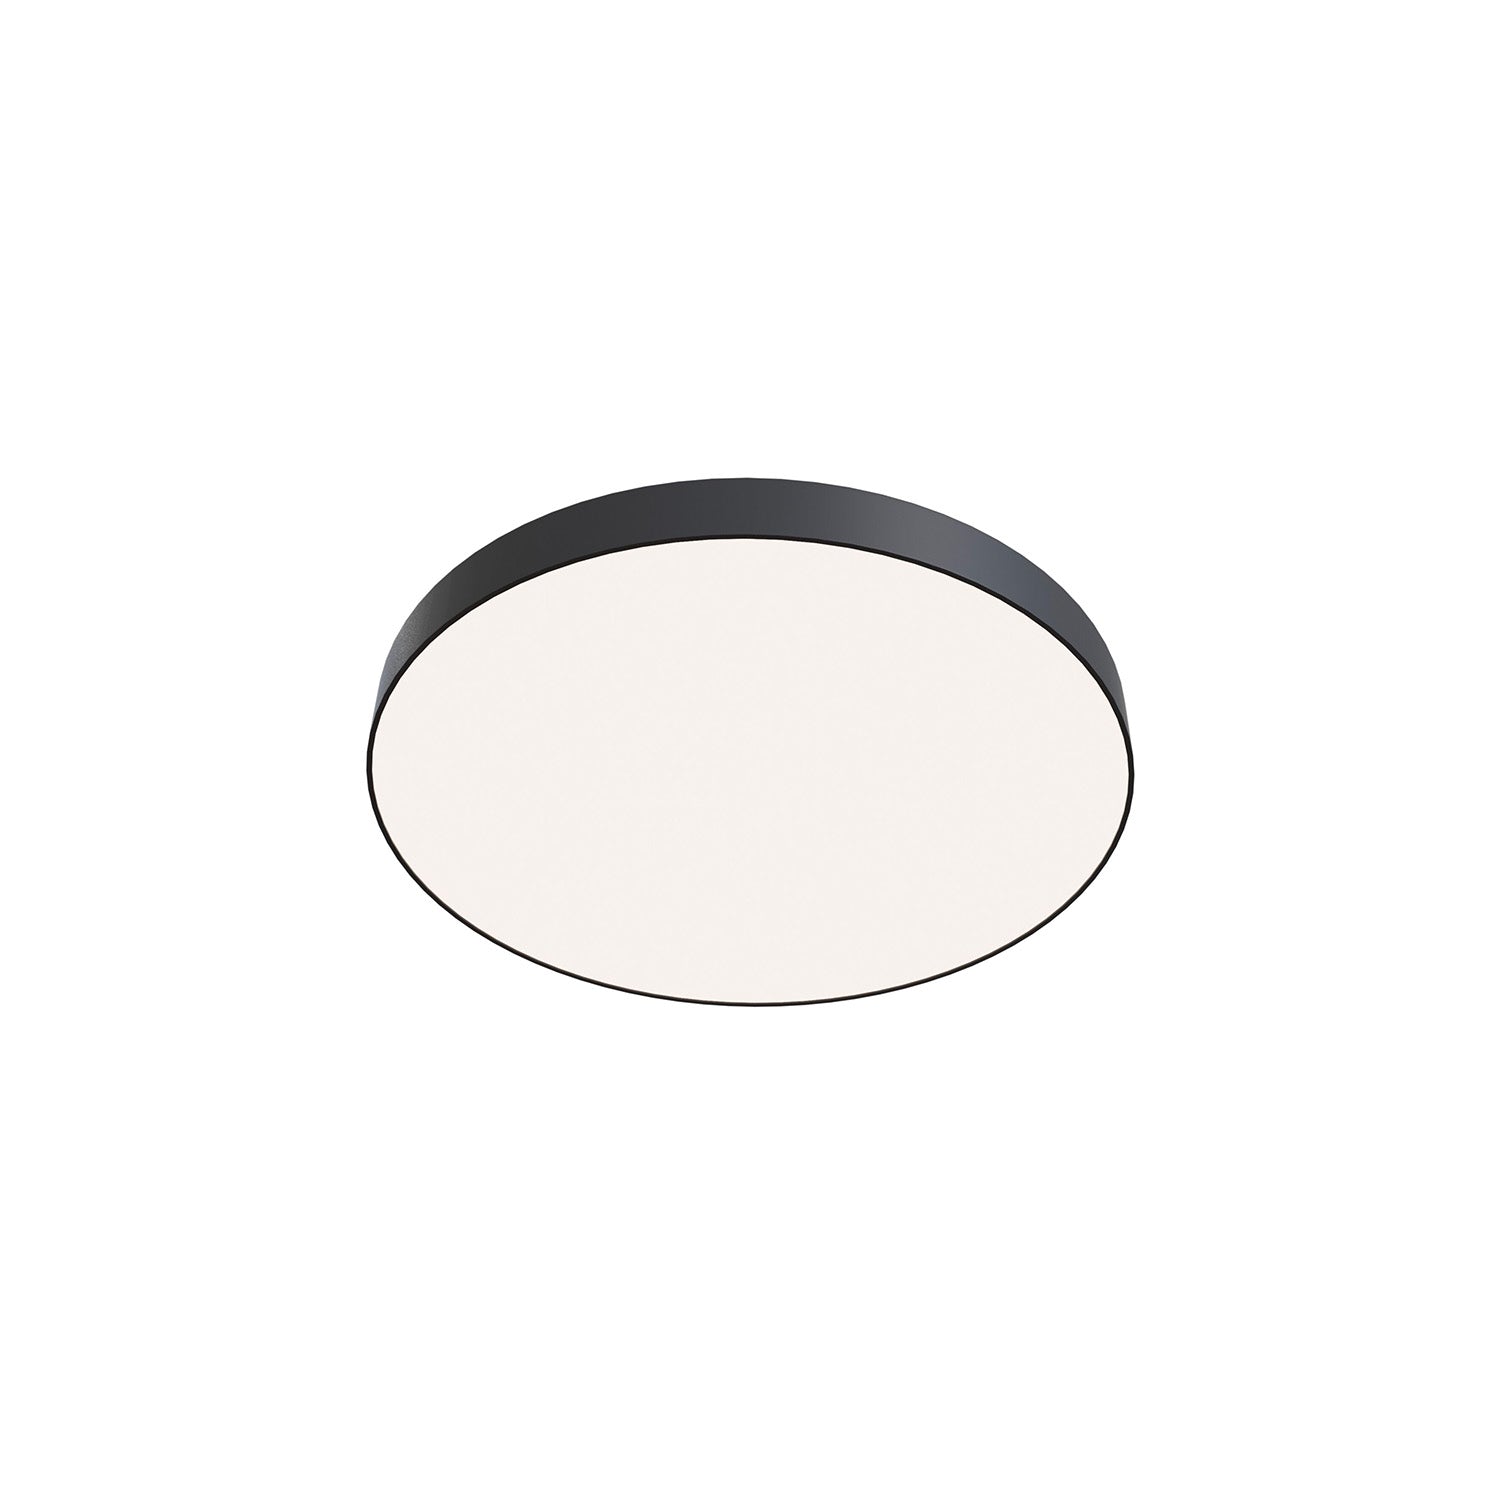 ZON – Design- und minimalistische Deckenleuchte in Schwarz oder Weiß, integrierte LED